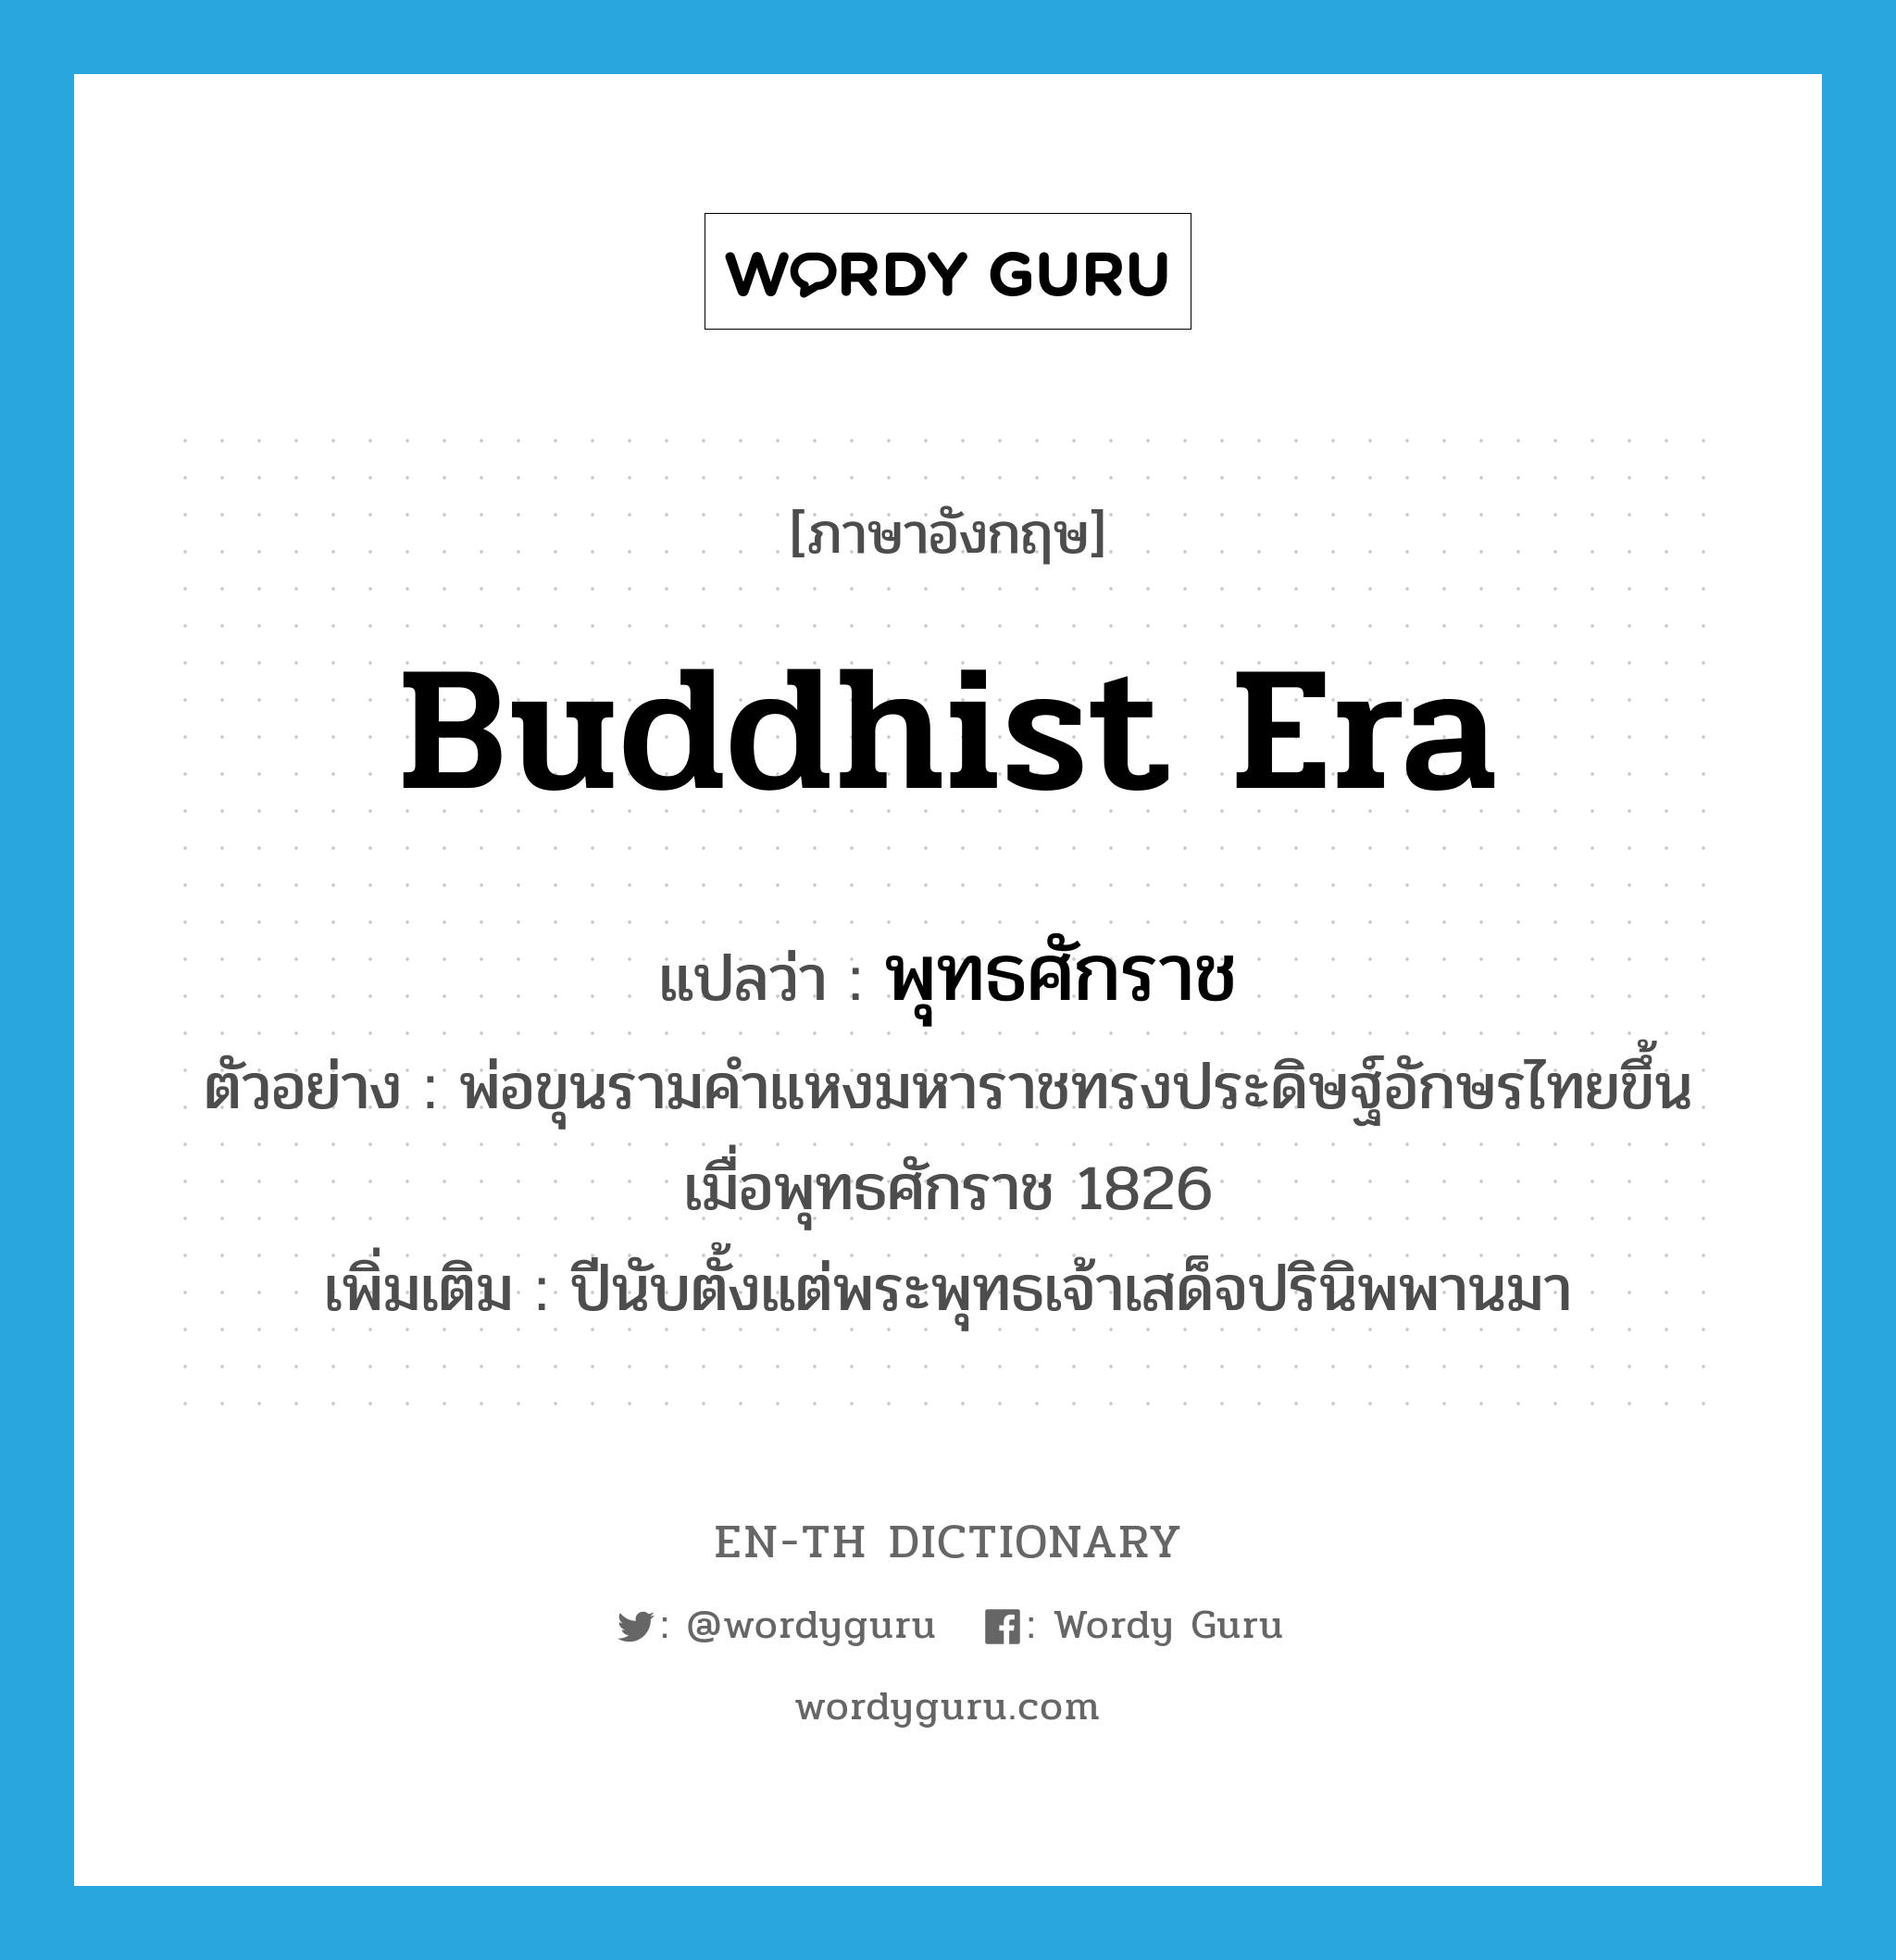 Buddhist era แปลว่า?, คำศัพท์ภาษาอังกฤษ Buddhist era แปลว่า พุทธศักราช ประเภท N ตัวอย่าง พ่อขุนรามคำแหงมหาราชทรงประดิษฐ์อักษรไทยขึ้นเมื่อพุทธศักราช 1826 เพิ่มเติม ปีนับตั้งแต่พระพุทธเจ้าเสด็จปรินิพพานมา หมวด N